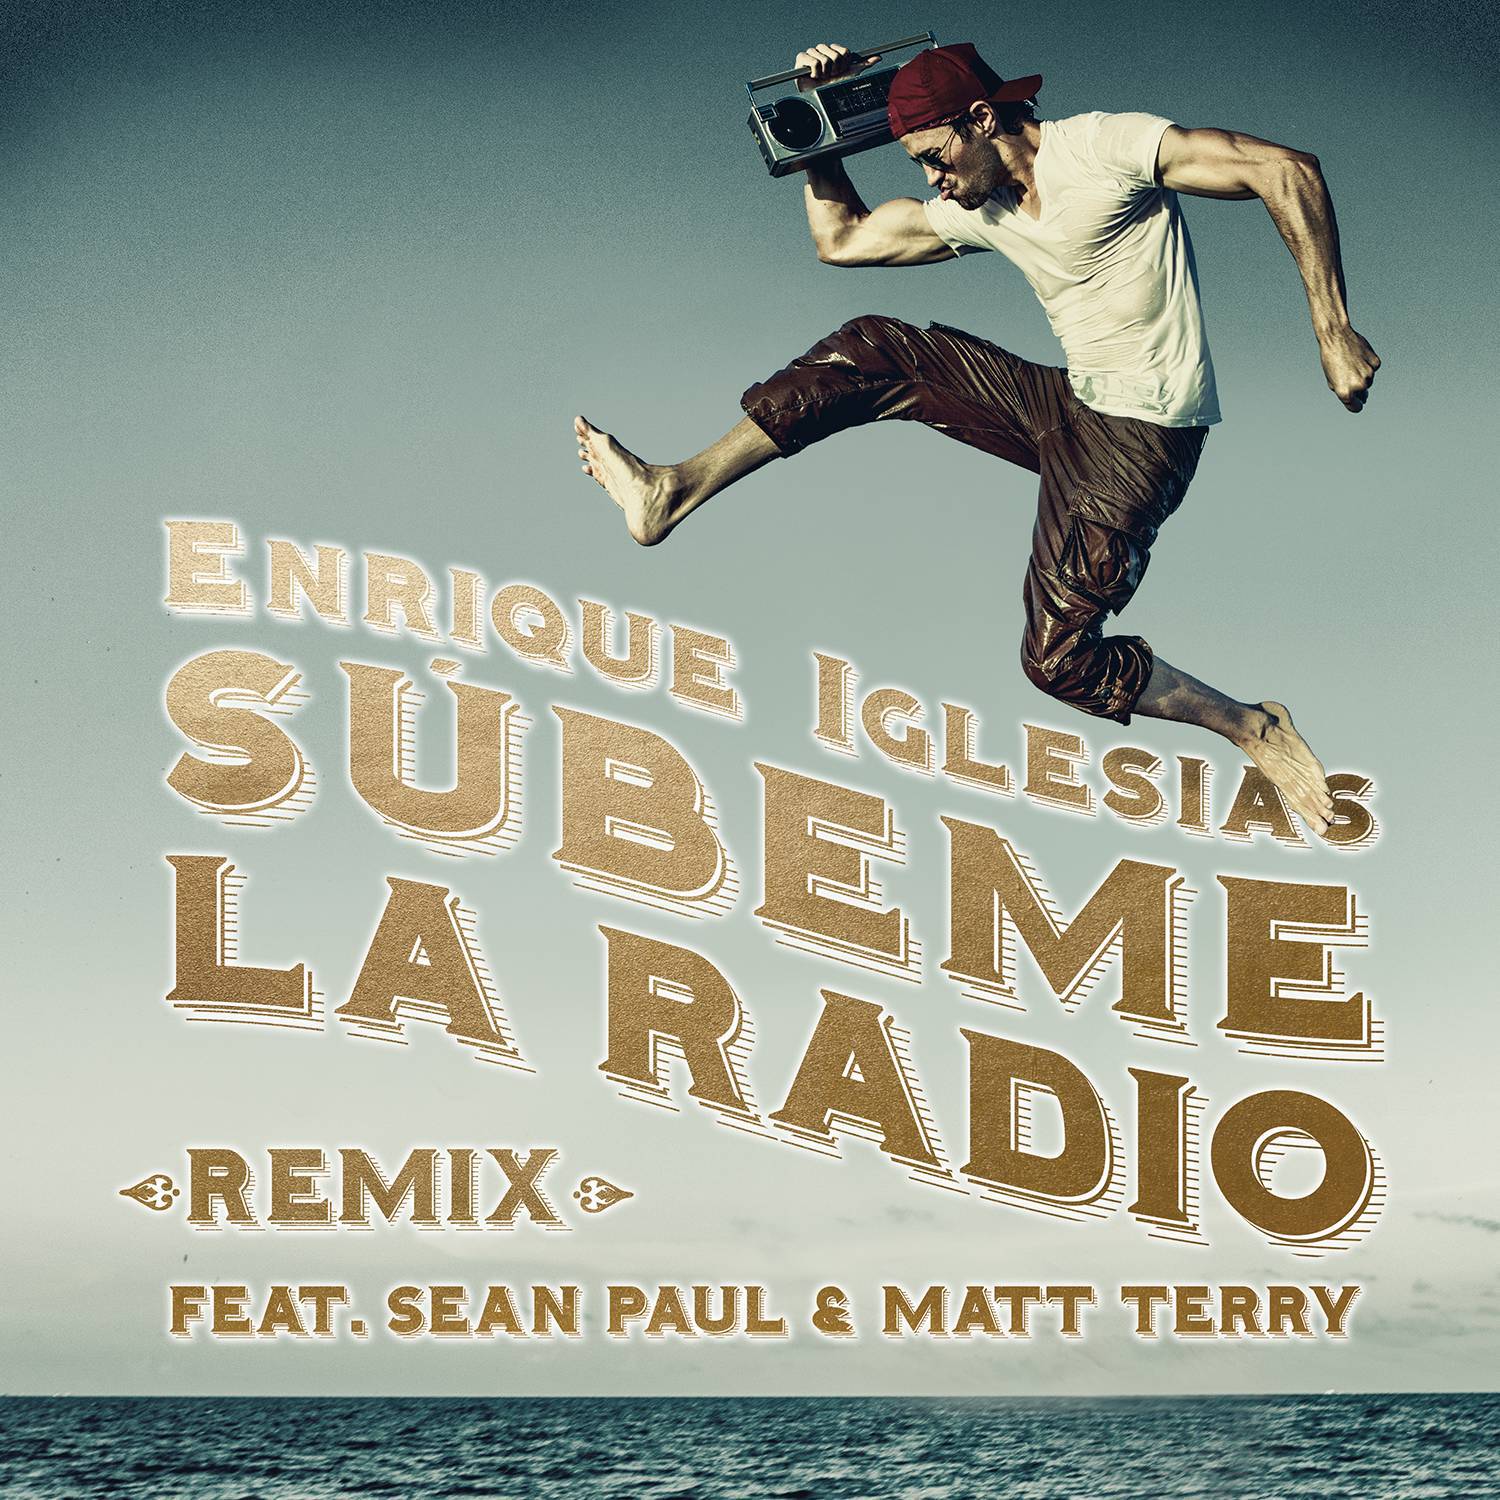 SÚBEME LA RADIO (REMIX)专辑